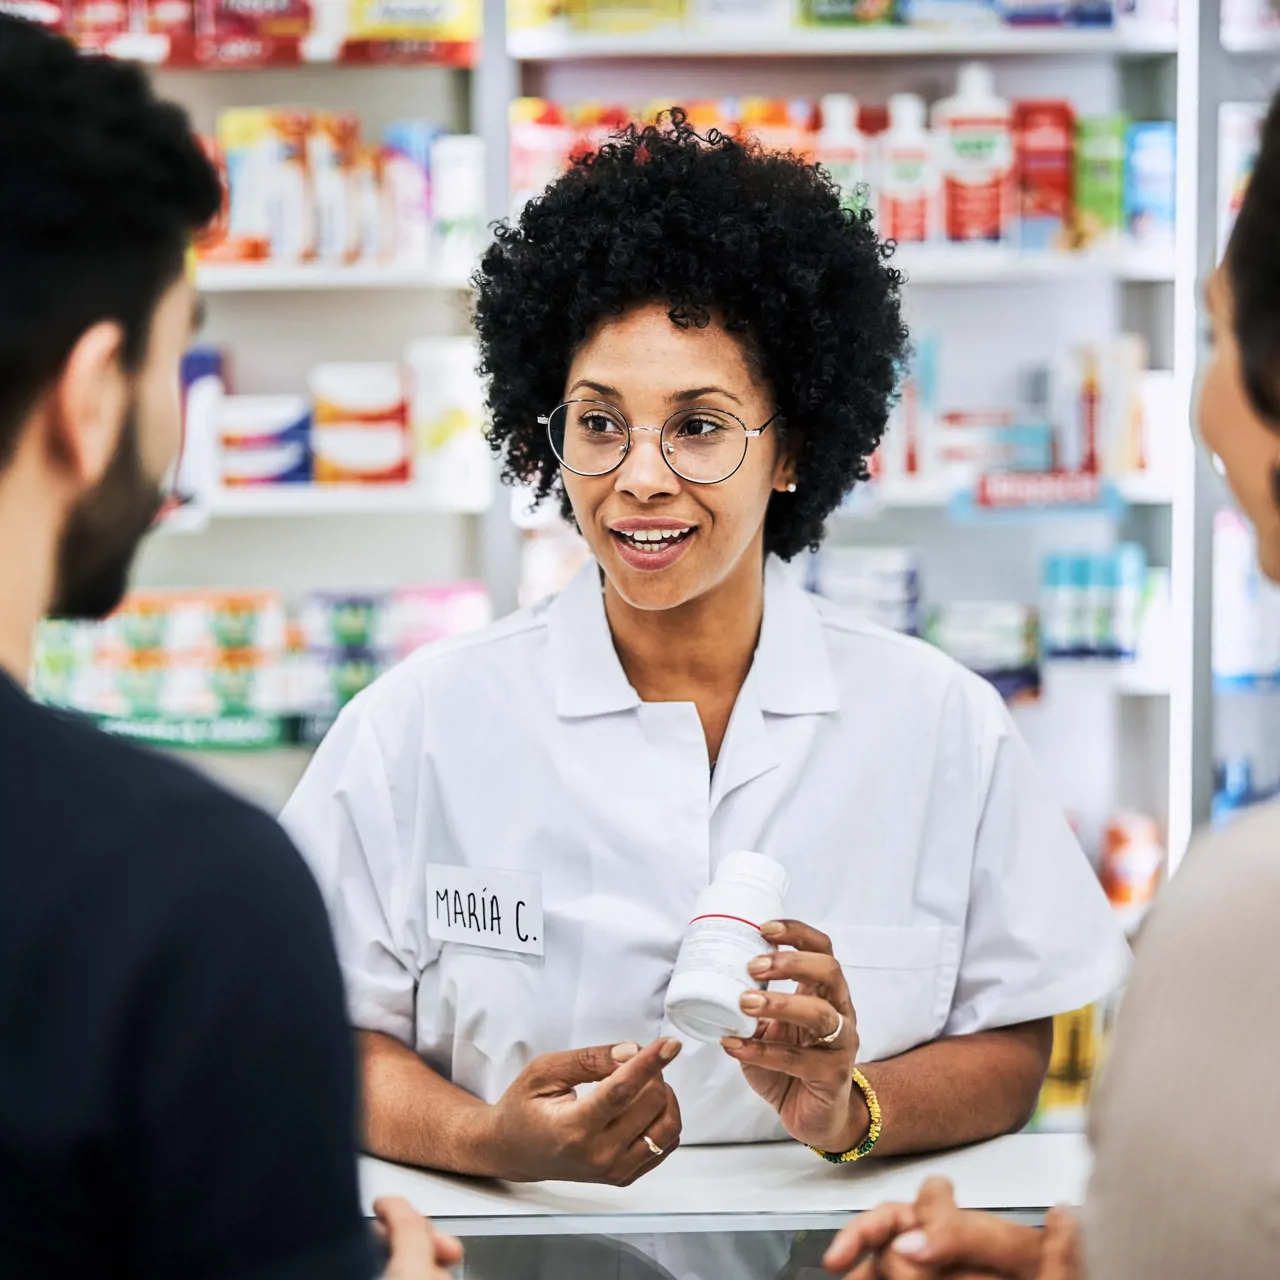 Pharmacy dispenser discussing medication